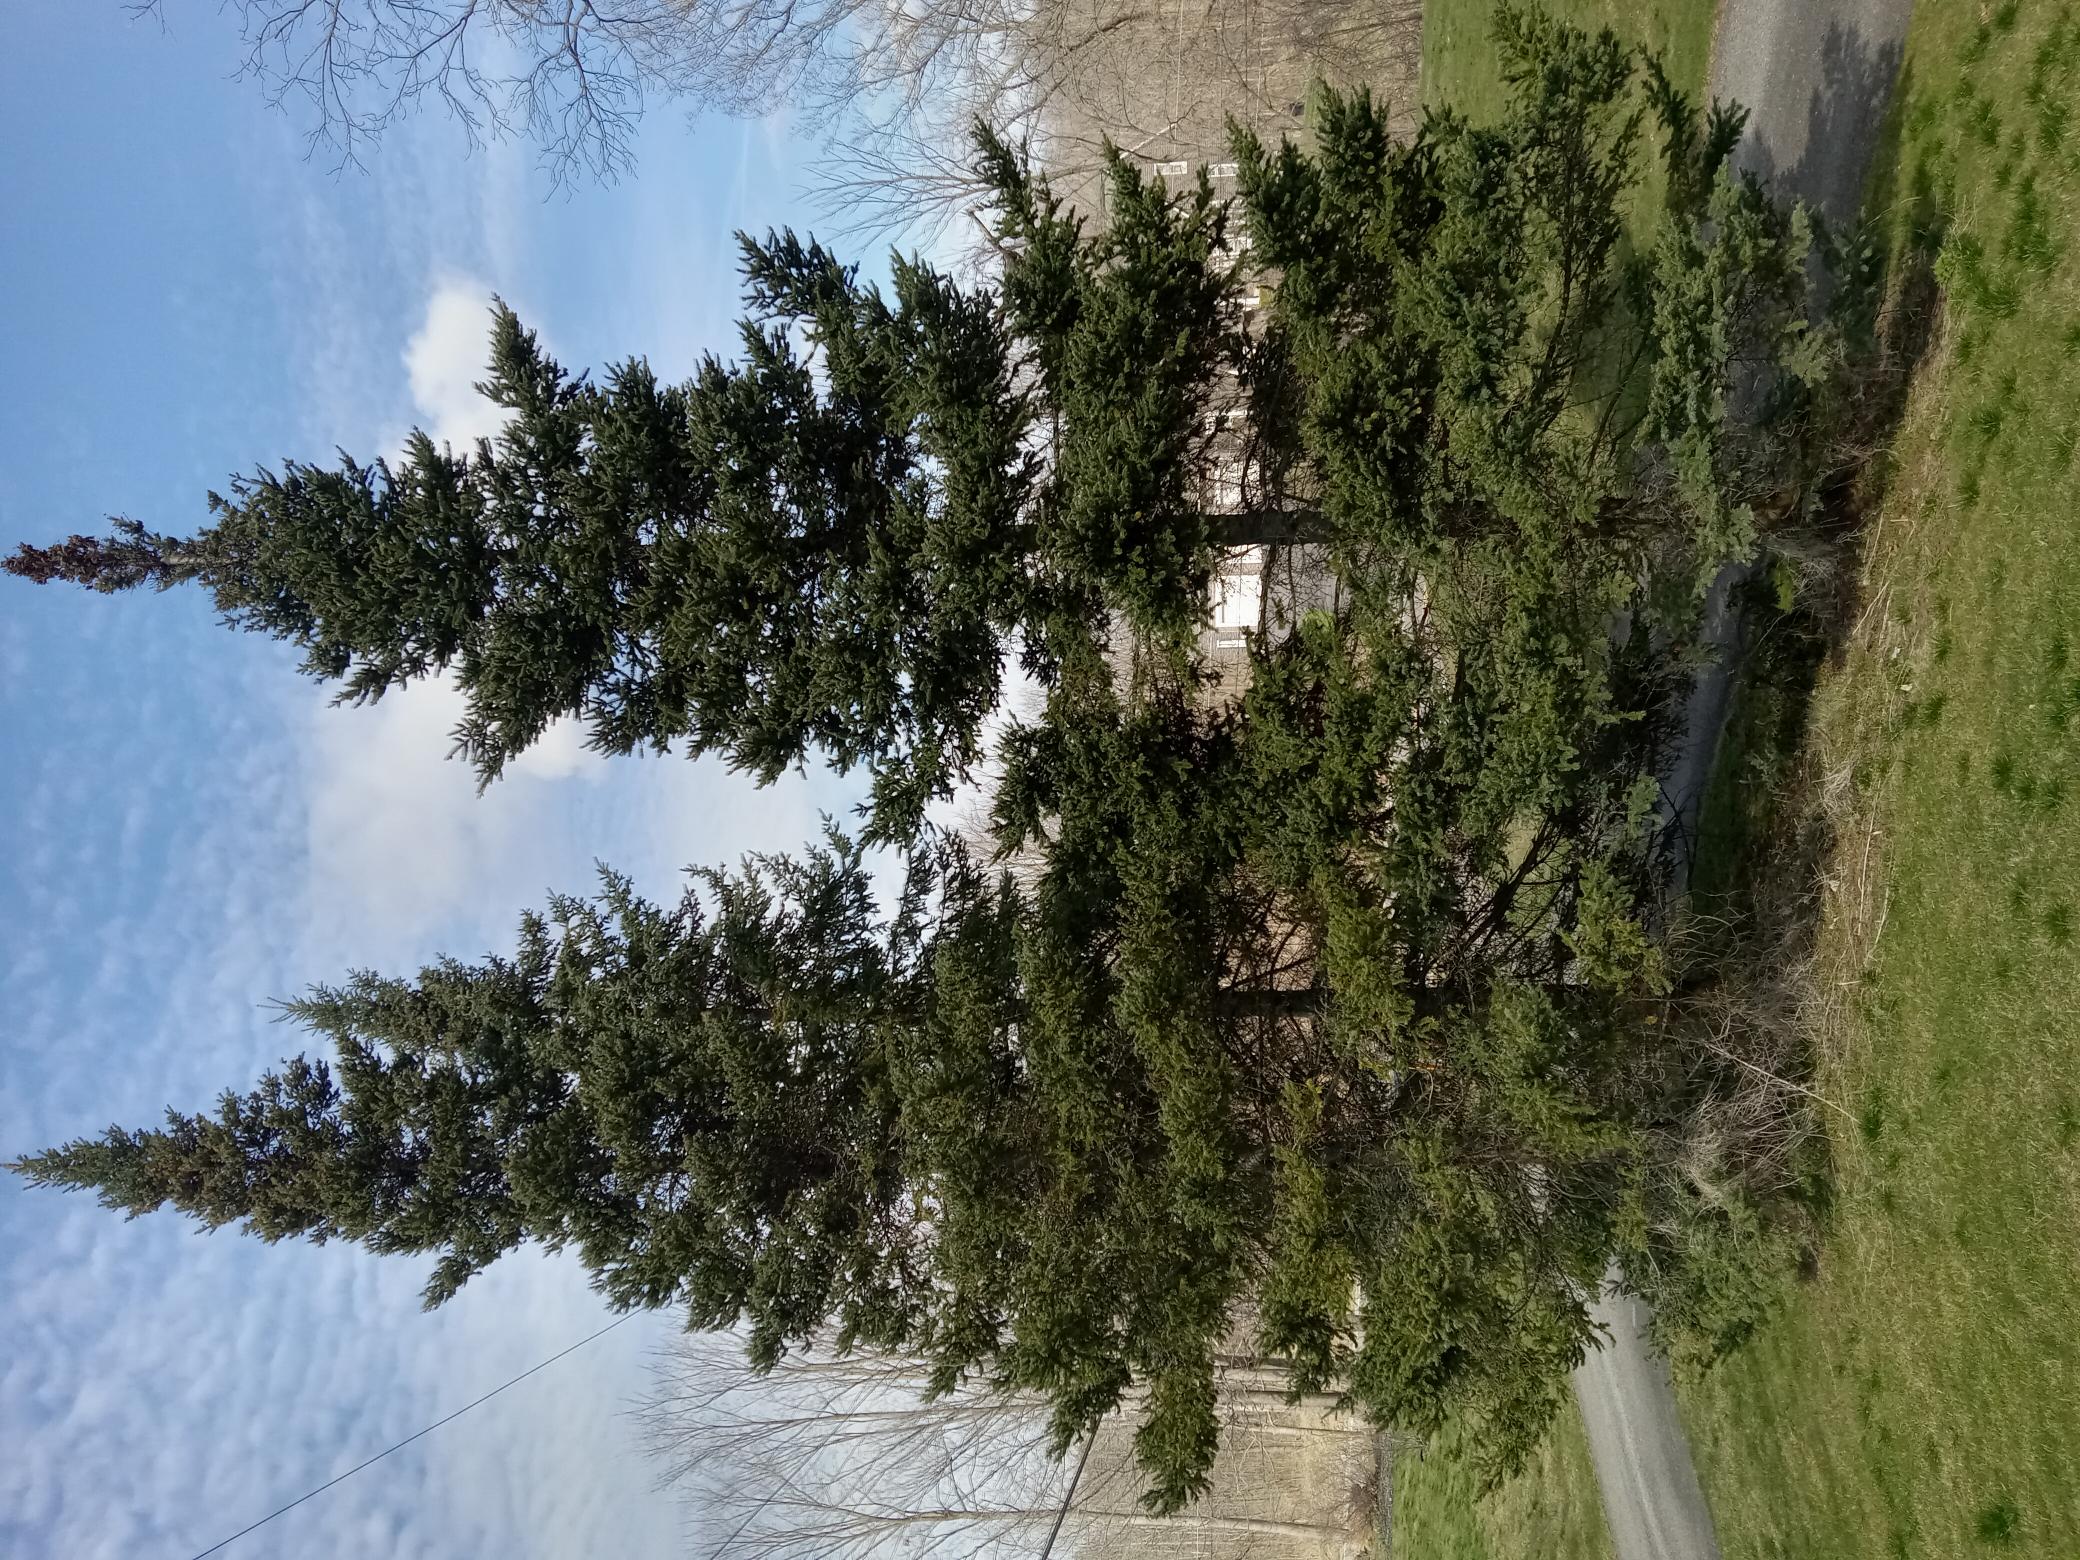 Some balsam fir trees